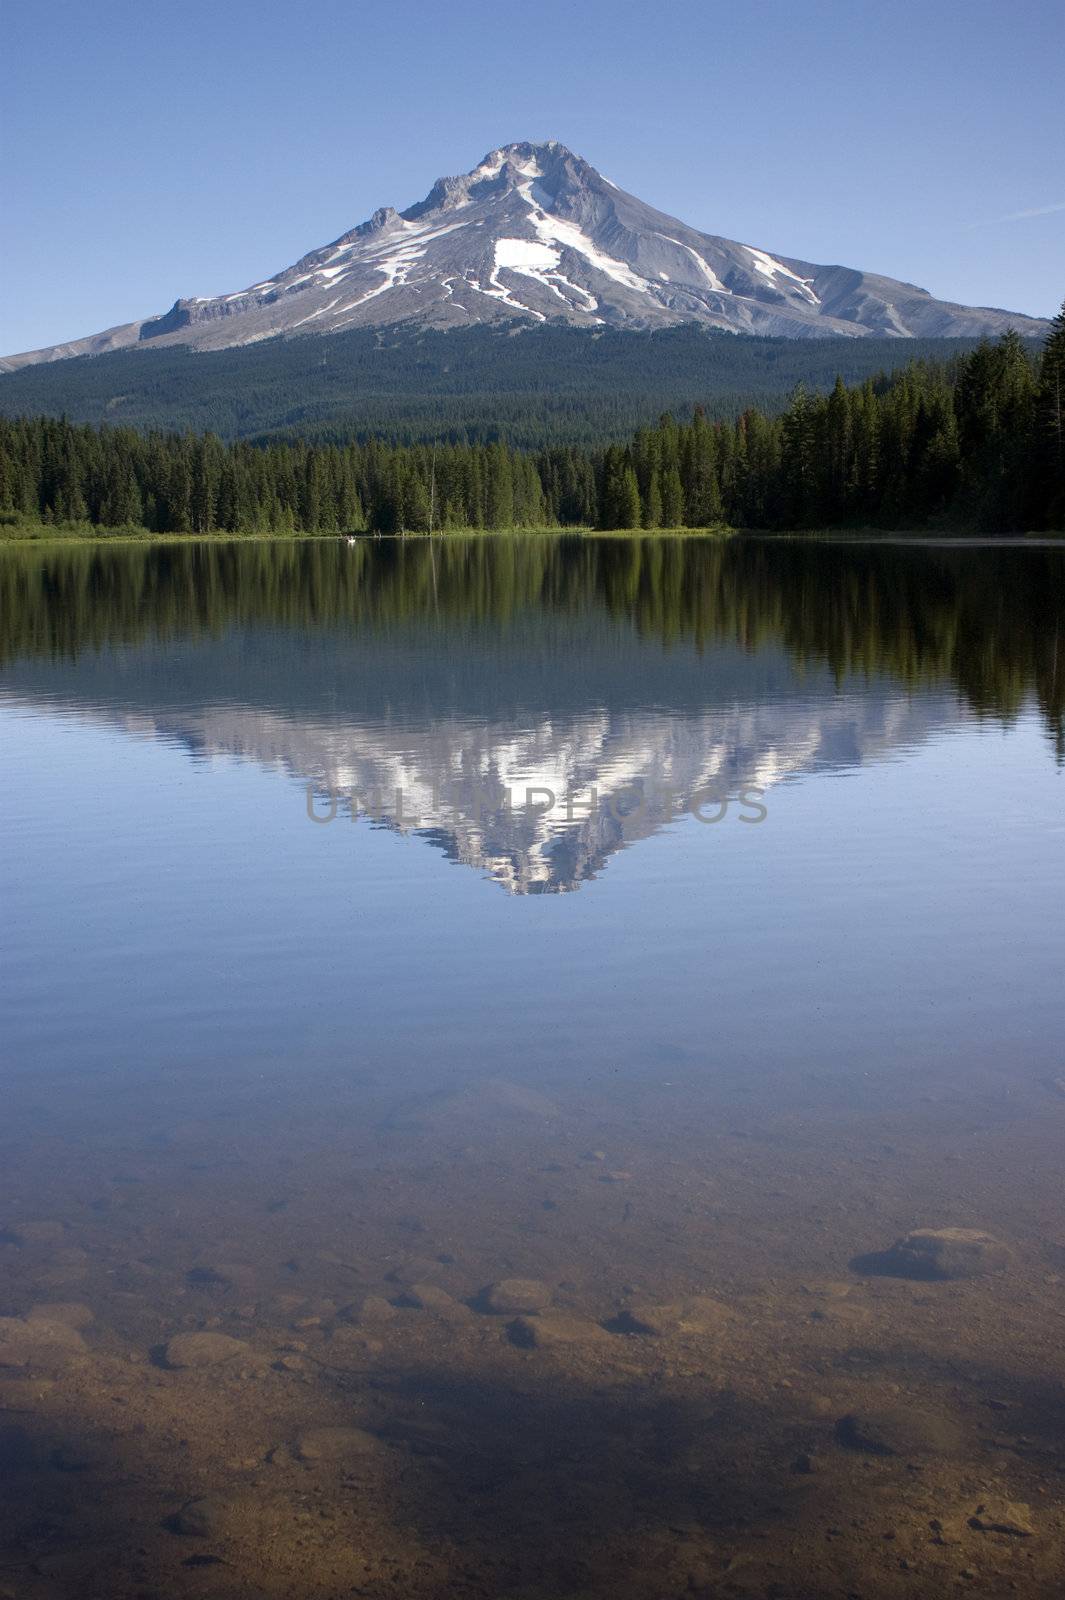 Mountain Lake called Trillium near Mount Hood, Oregon USA